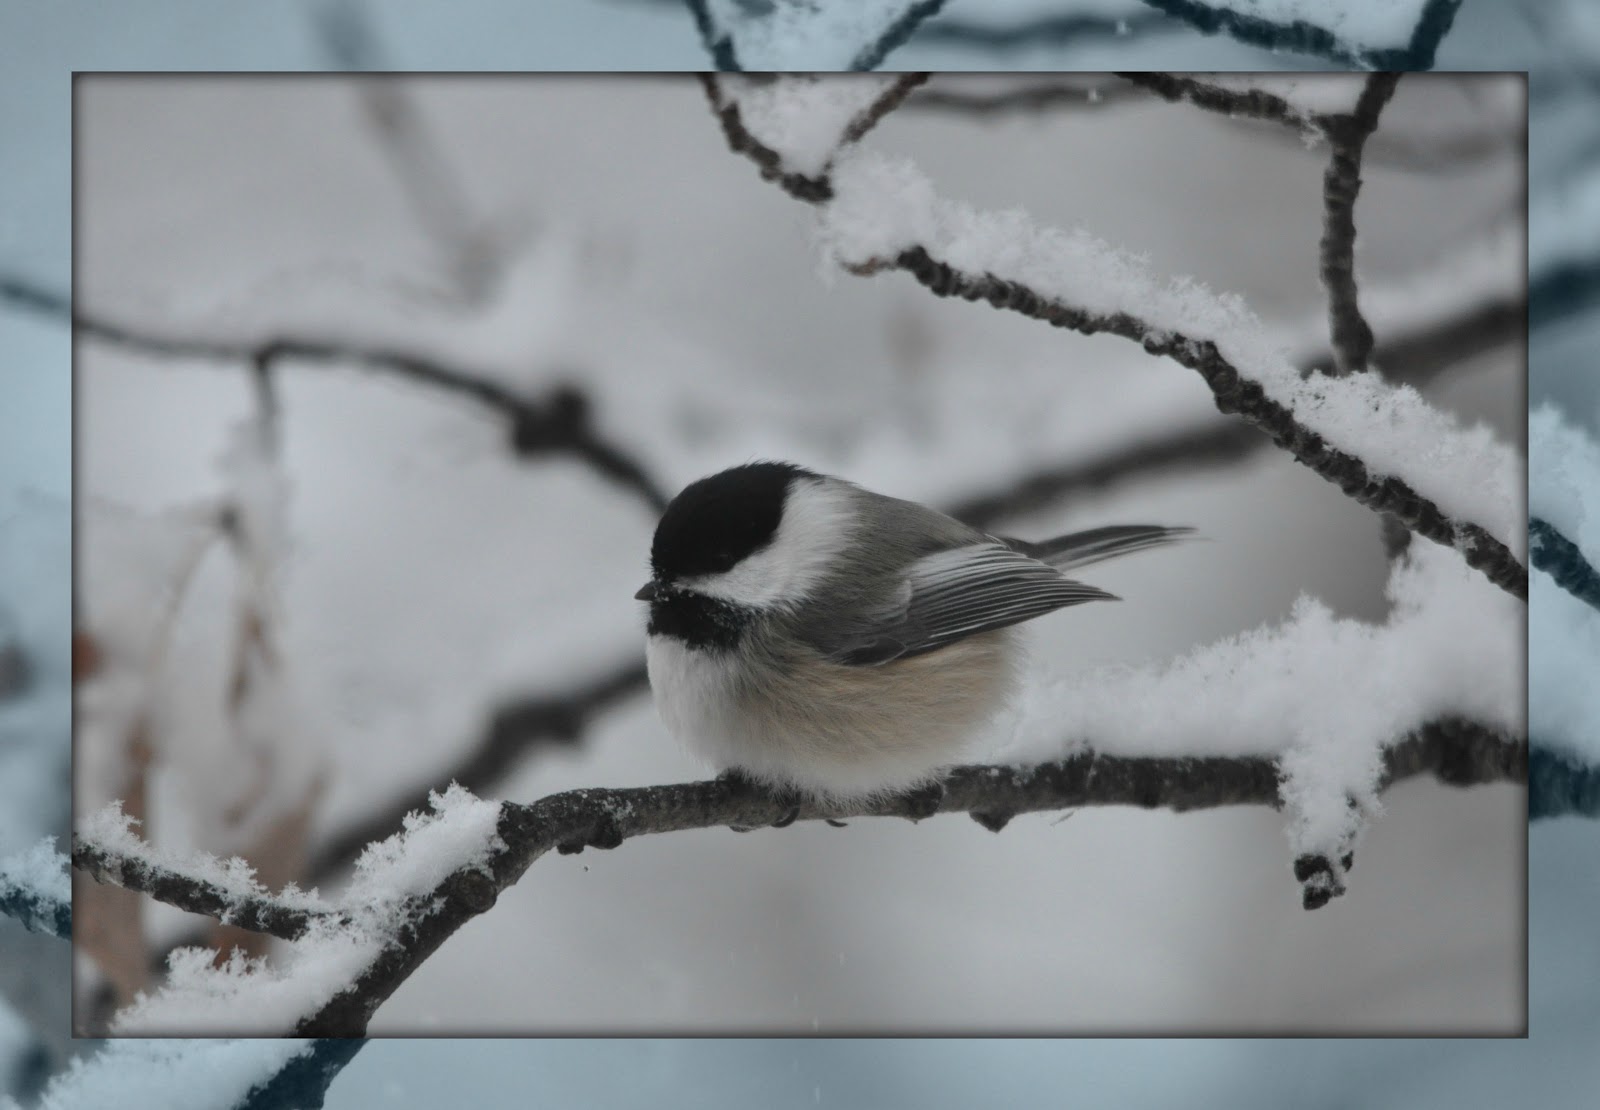 Υπάρχει-Λόγος(Εν αρχή ην ο Λόγος): Τα πουλιά του χειμώνα -Ποιήματα